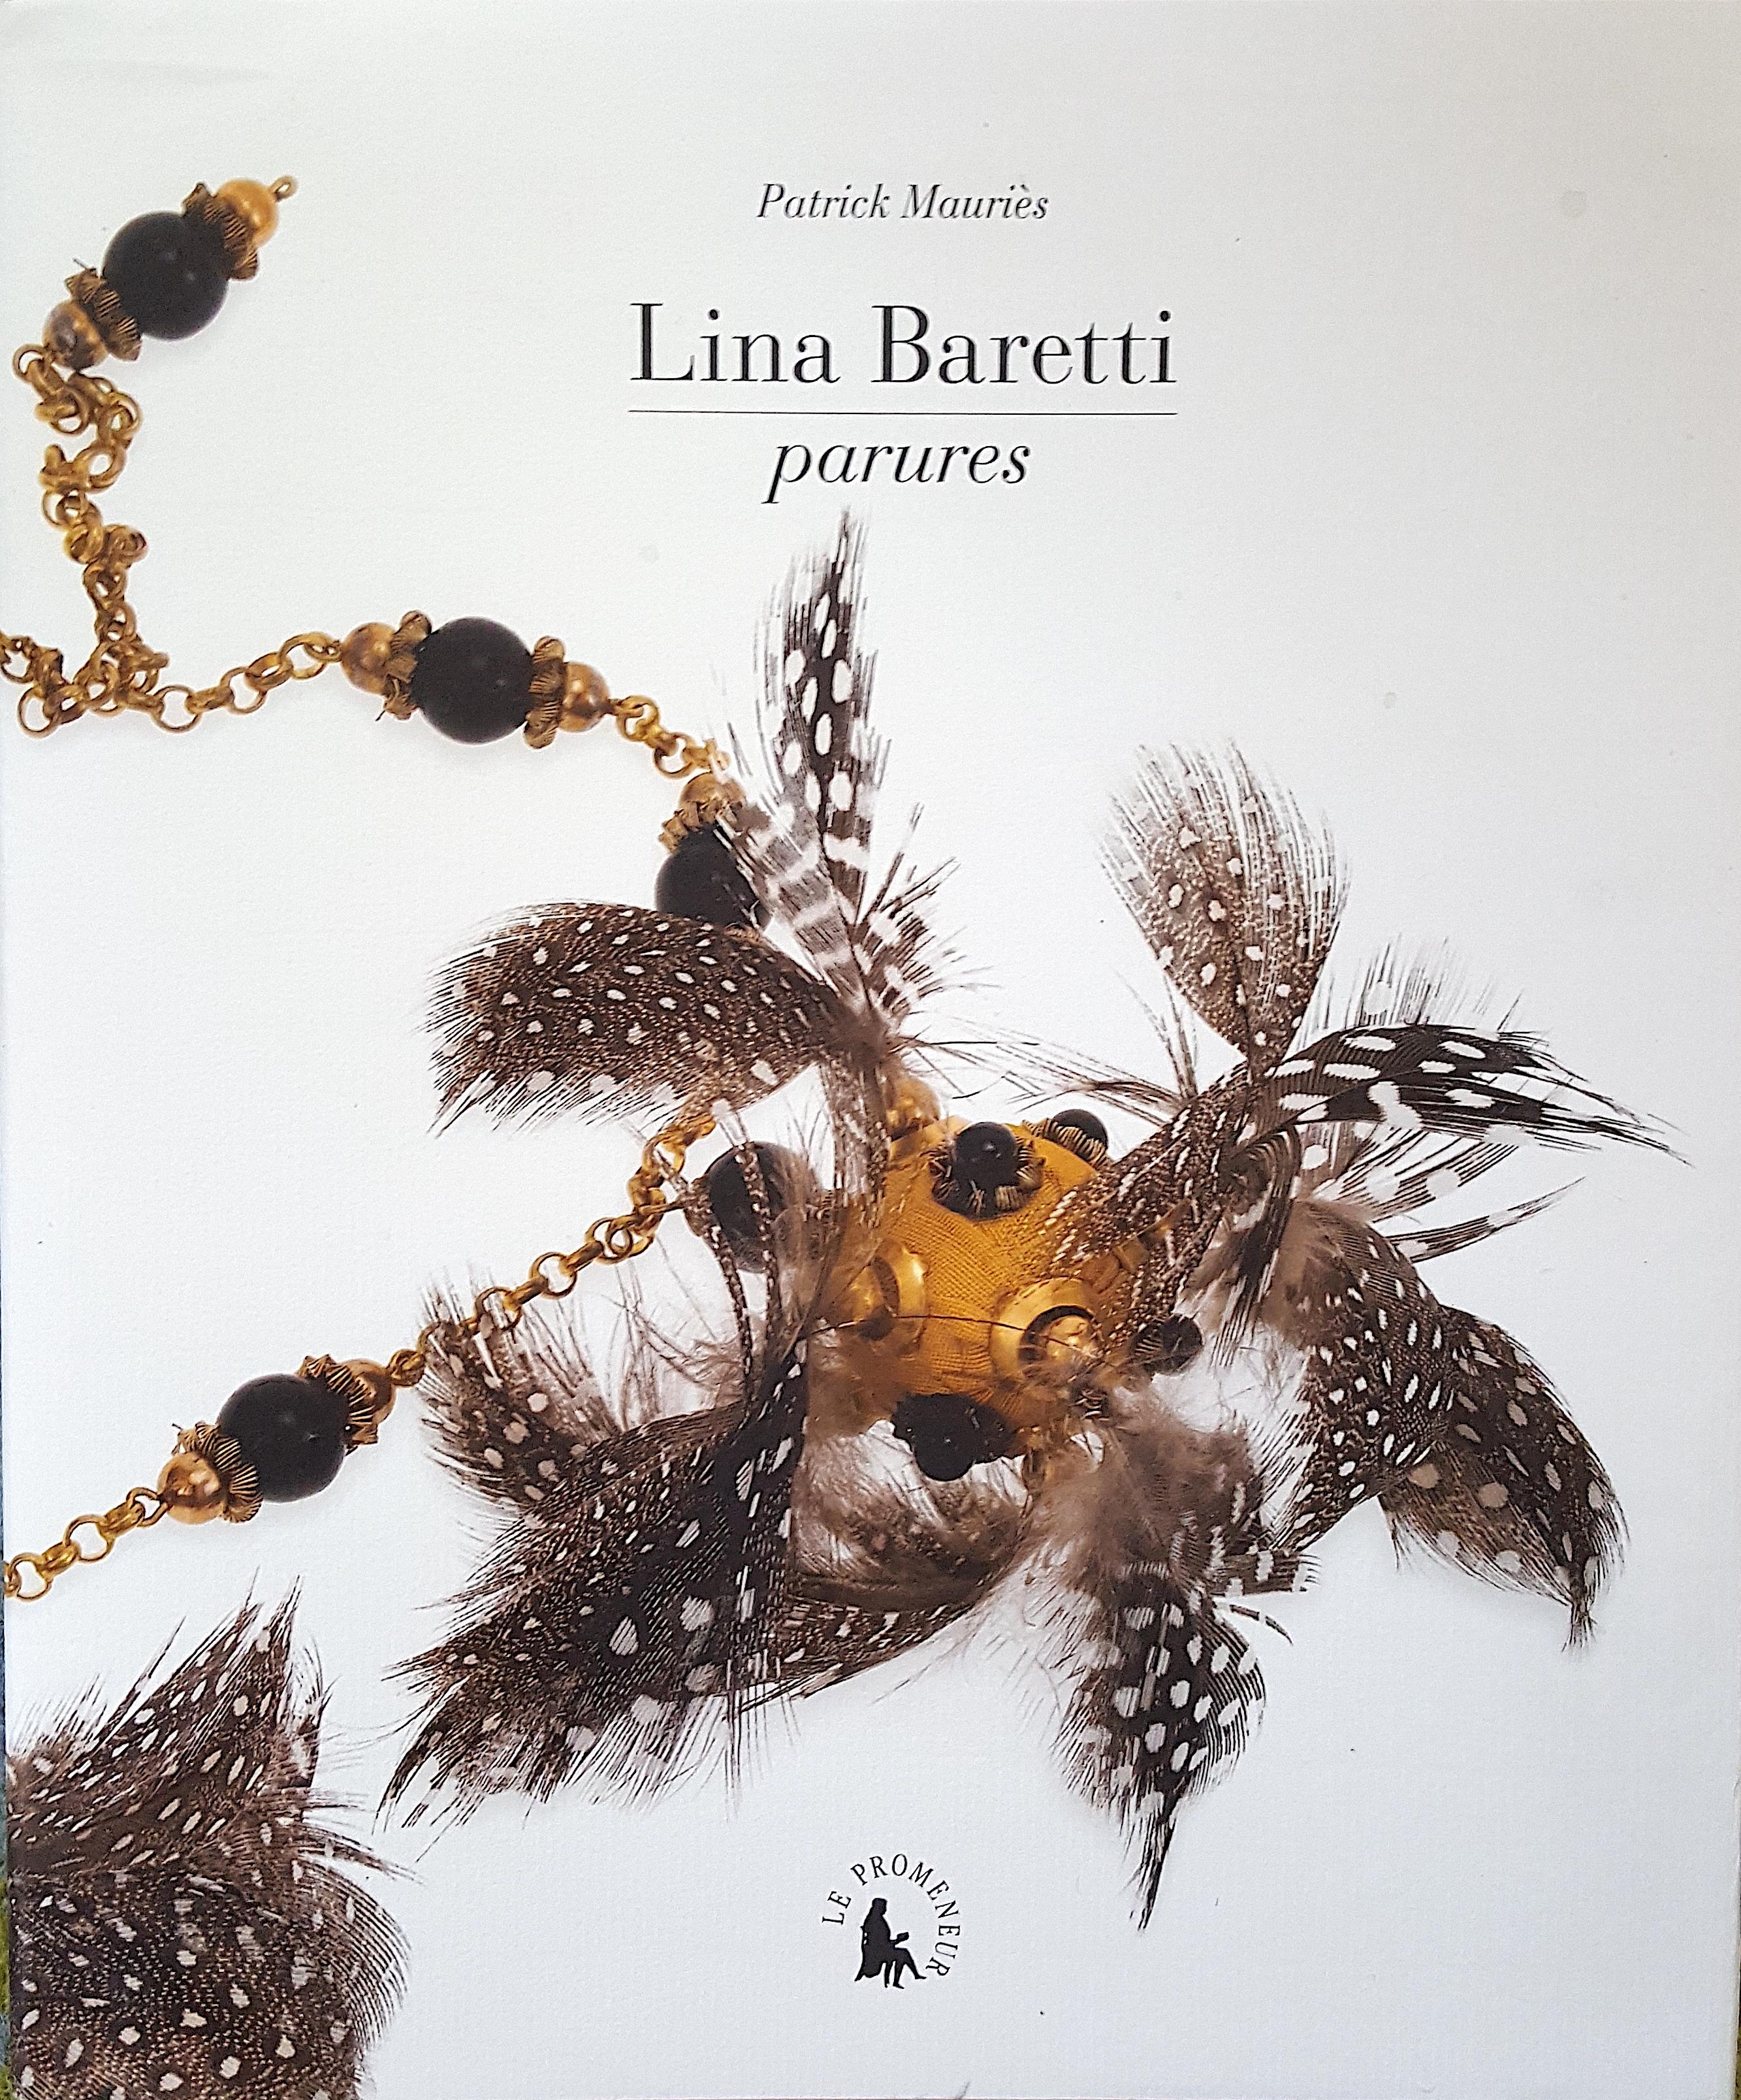 Ungewöhnlich dekoriert mit kleinen Rebhuhnfedern wie die gelbgoldene vergoldete Halskette, die von Elsa Schiaparelli (1890-1973) in Auftrag gegeben wurde und die auf der Vorder- und Rückseite und dem Mittelblatt des französischen